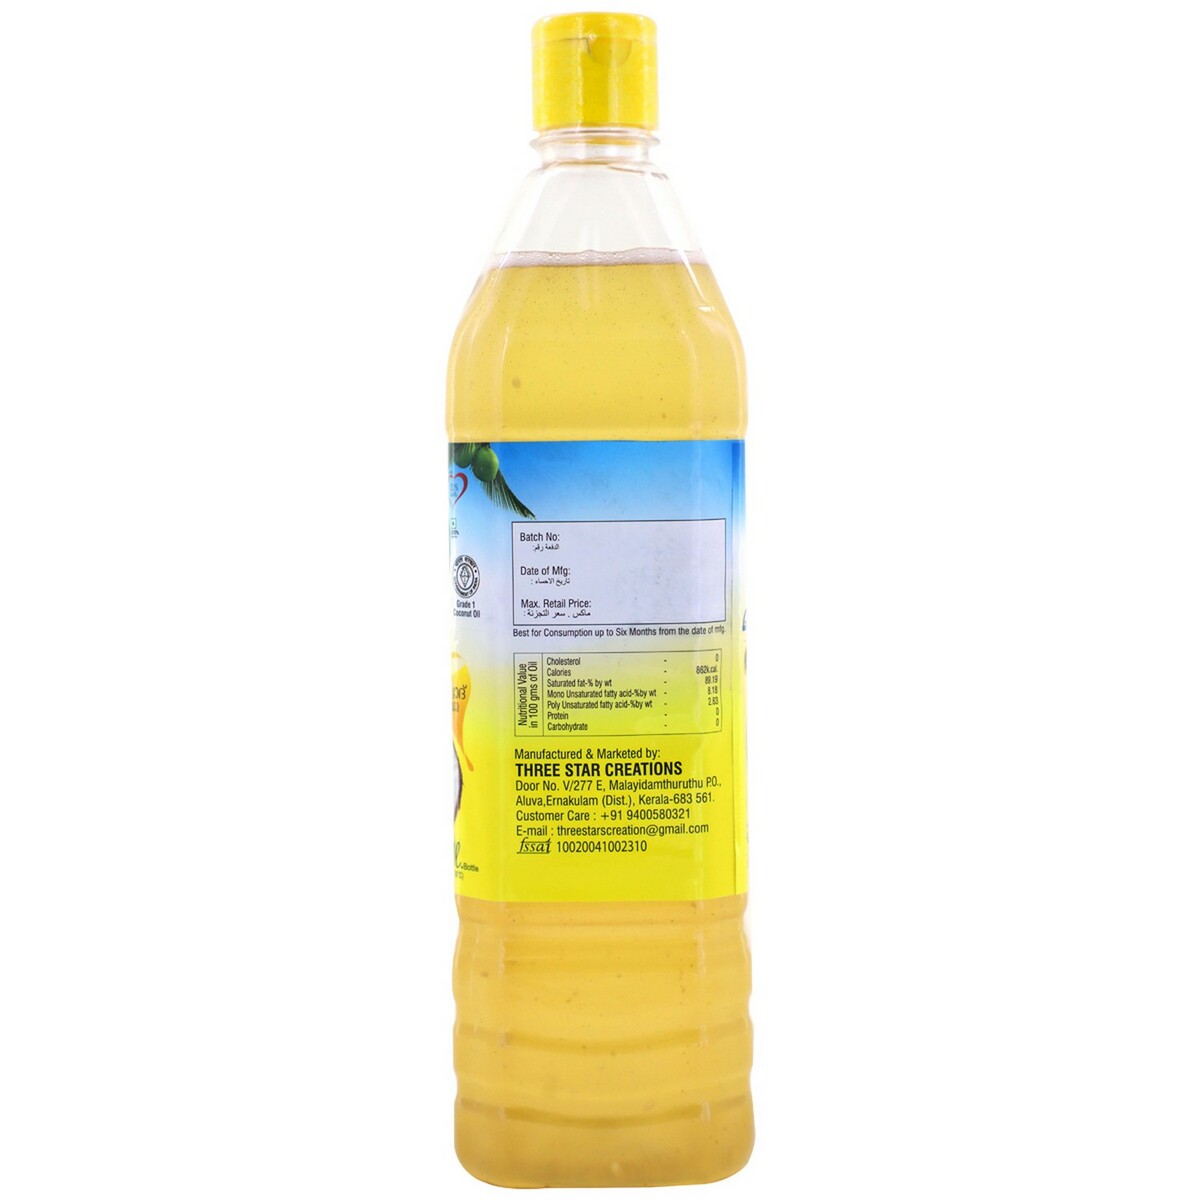 Kera Swad Coconut Oil Bottle 1L